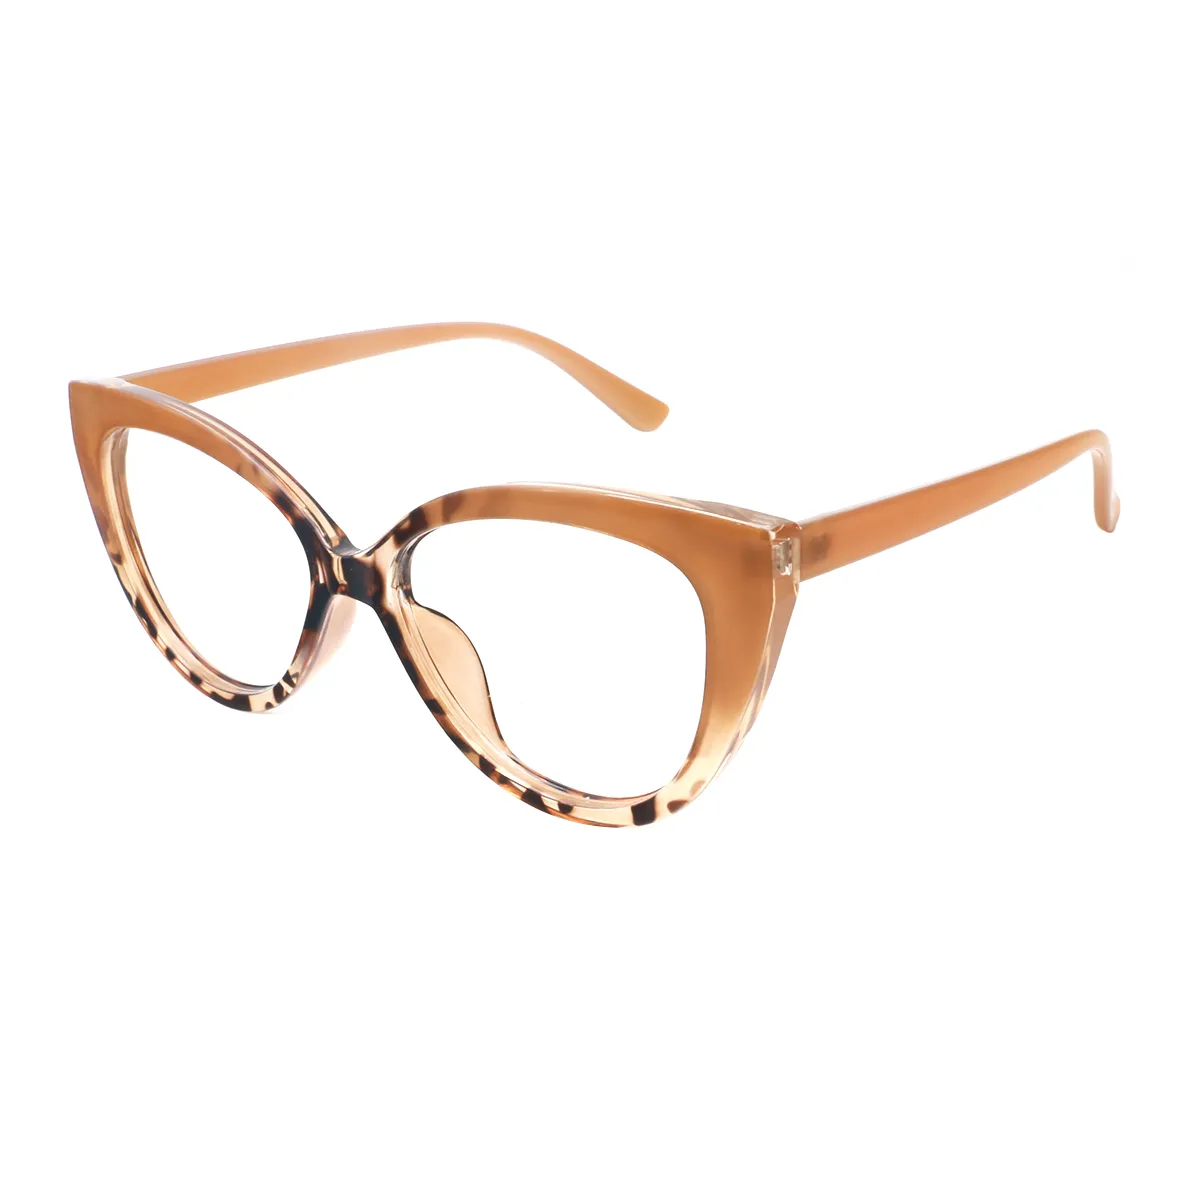 Leila - Cat-eye Brown Glasses for Women - EFE